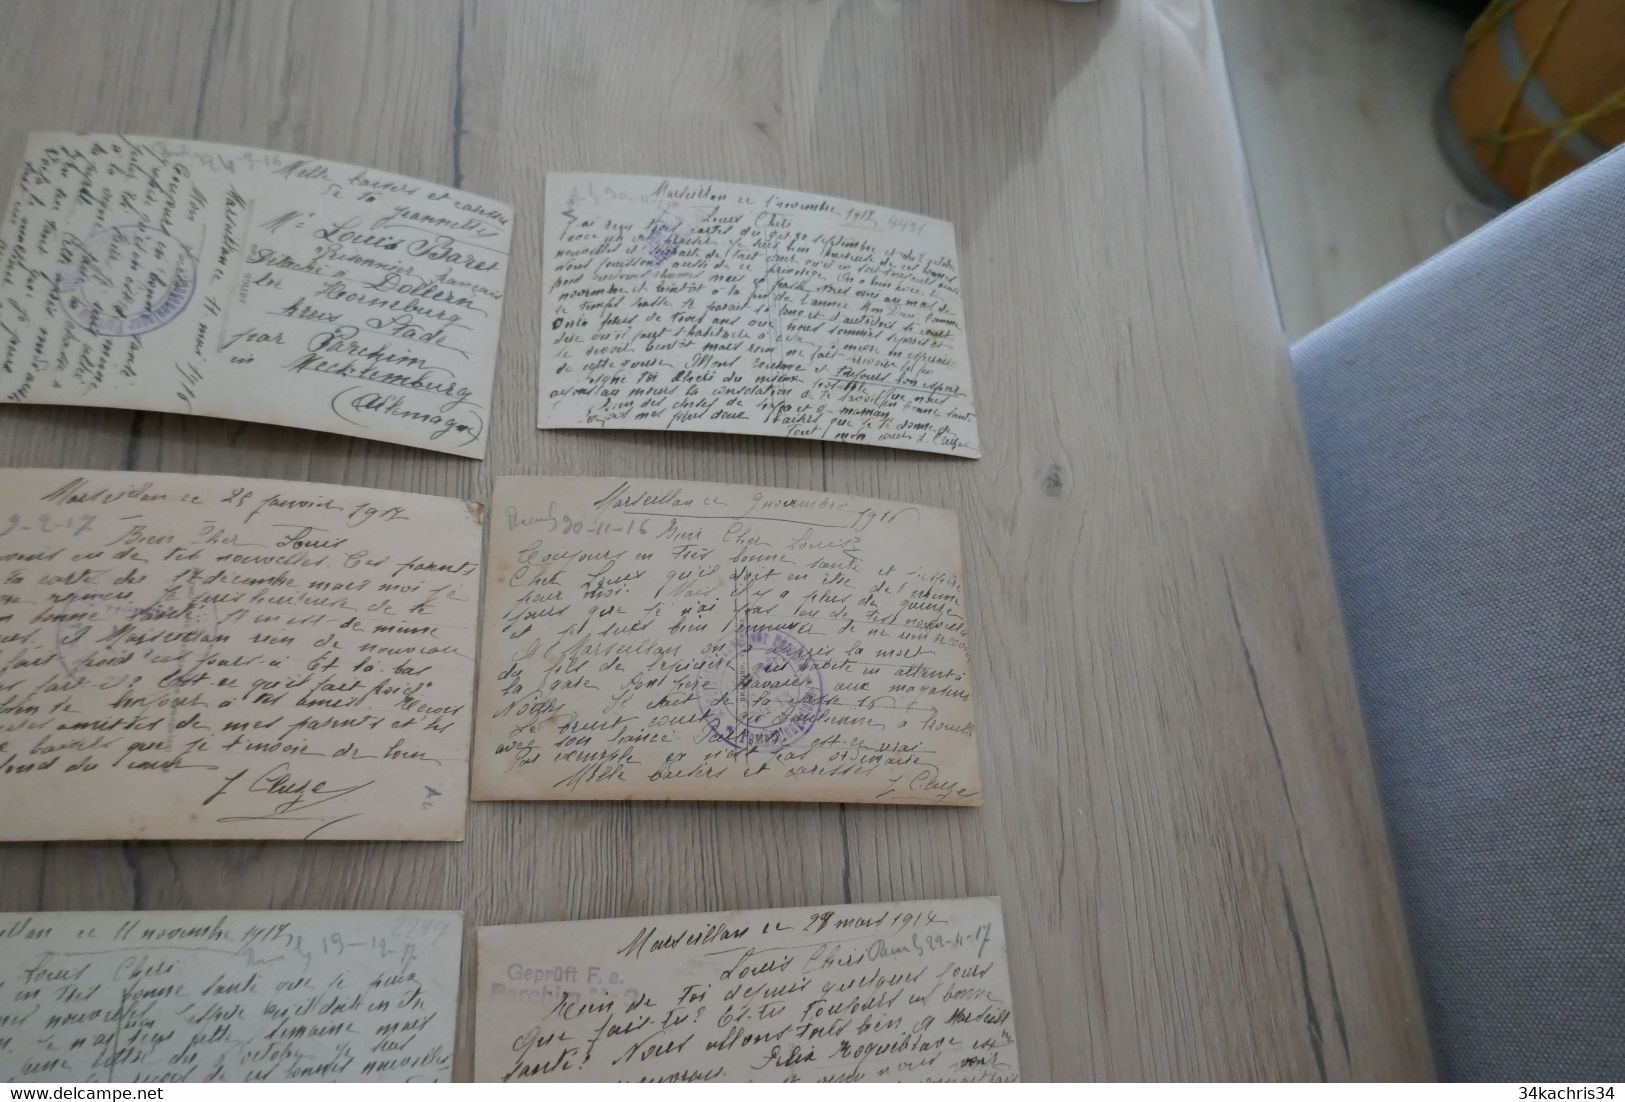 Marseillan 45 CPA  cachets militaires allemands de camps  texte Guerre de 14/18 récits nouvelles prisonniers de guerre